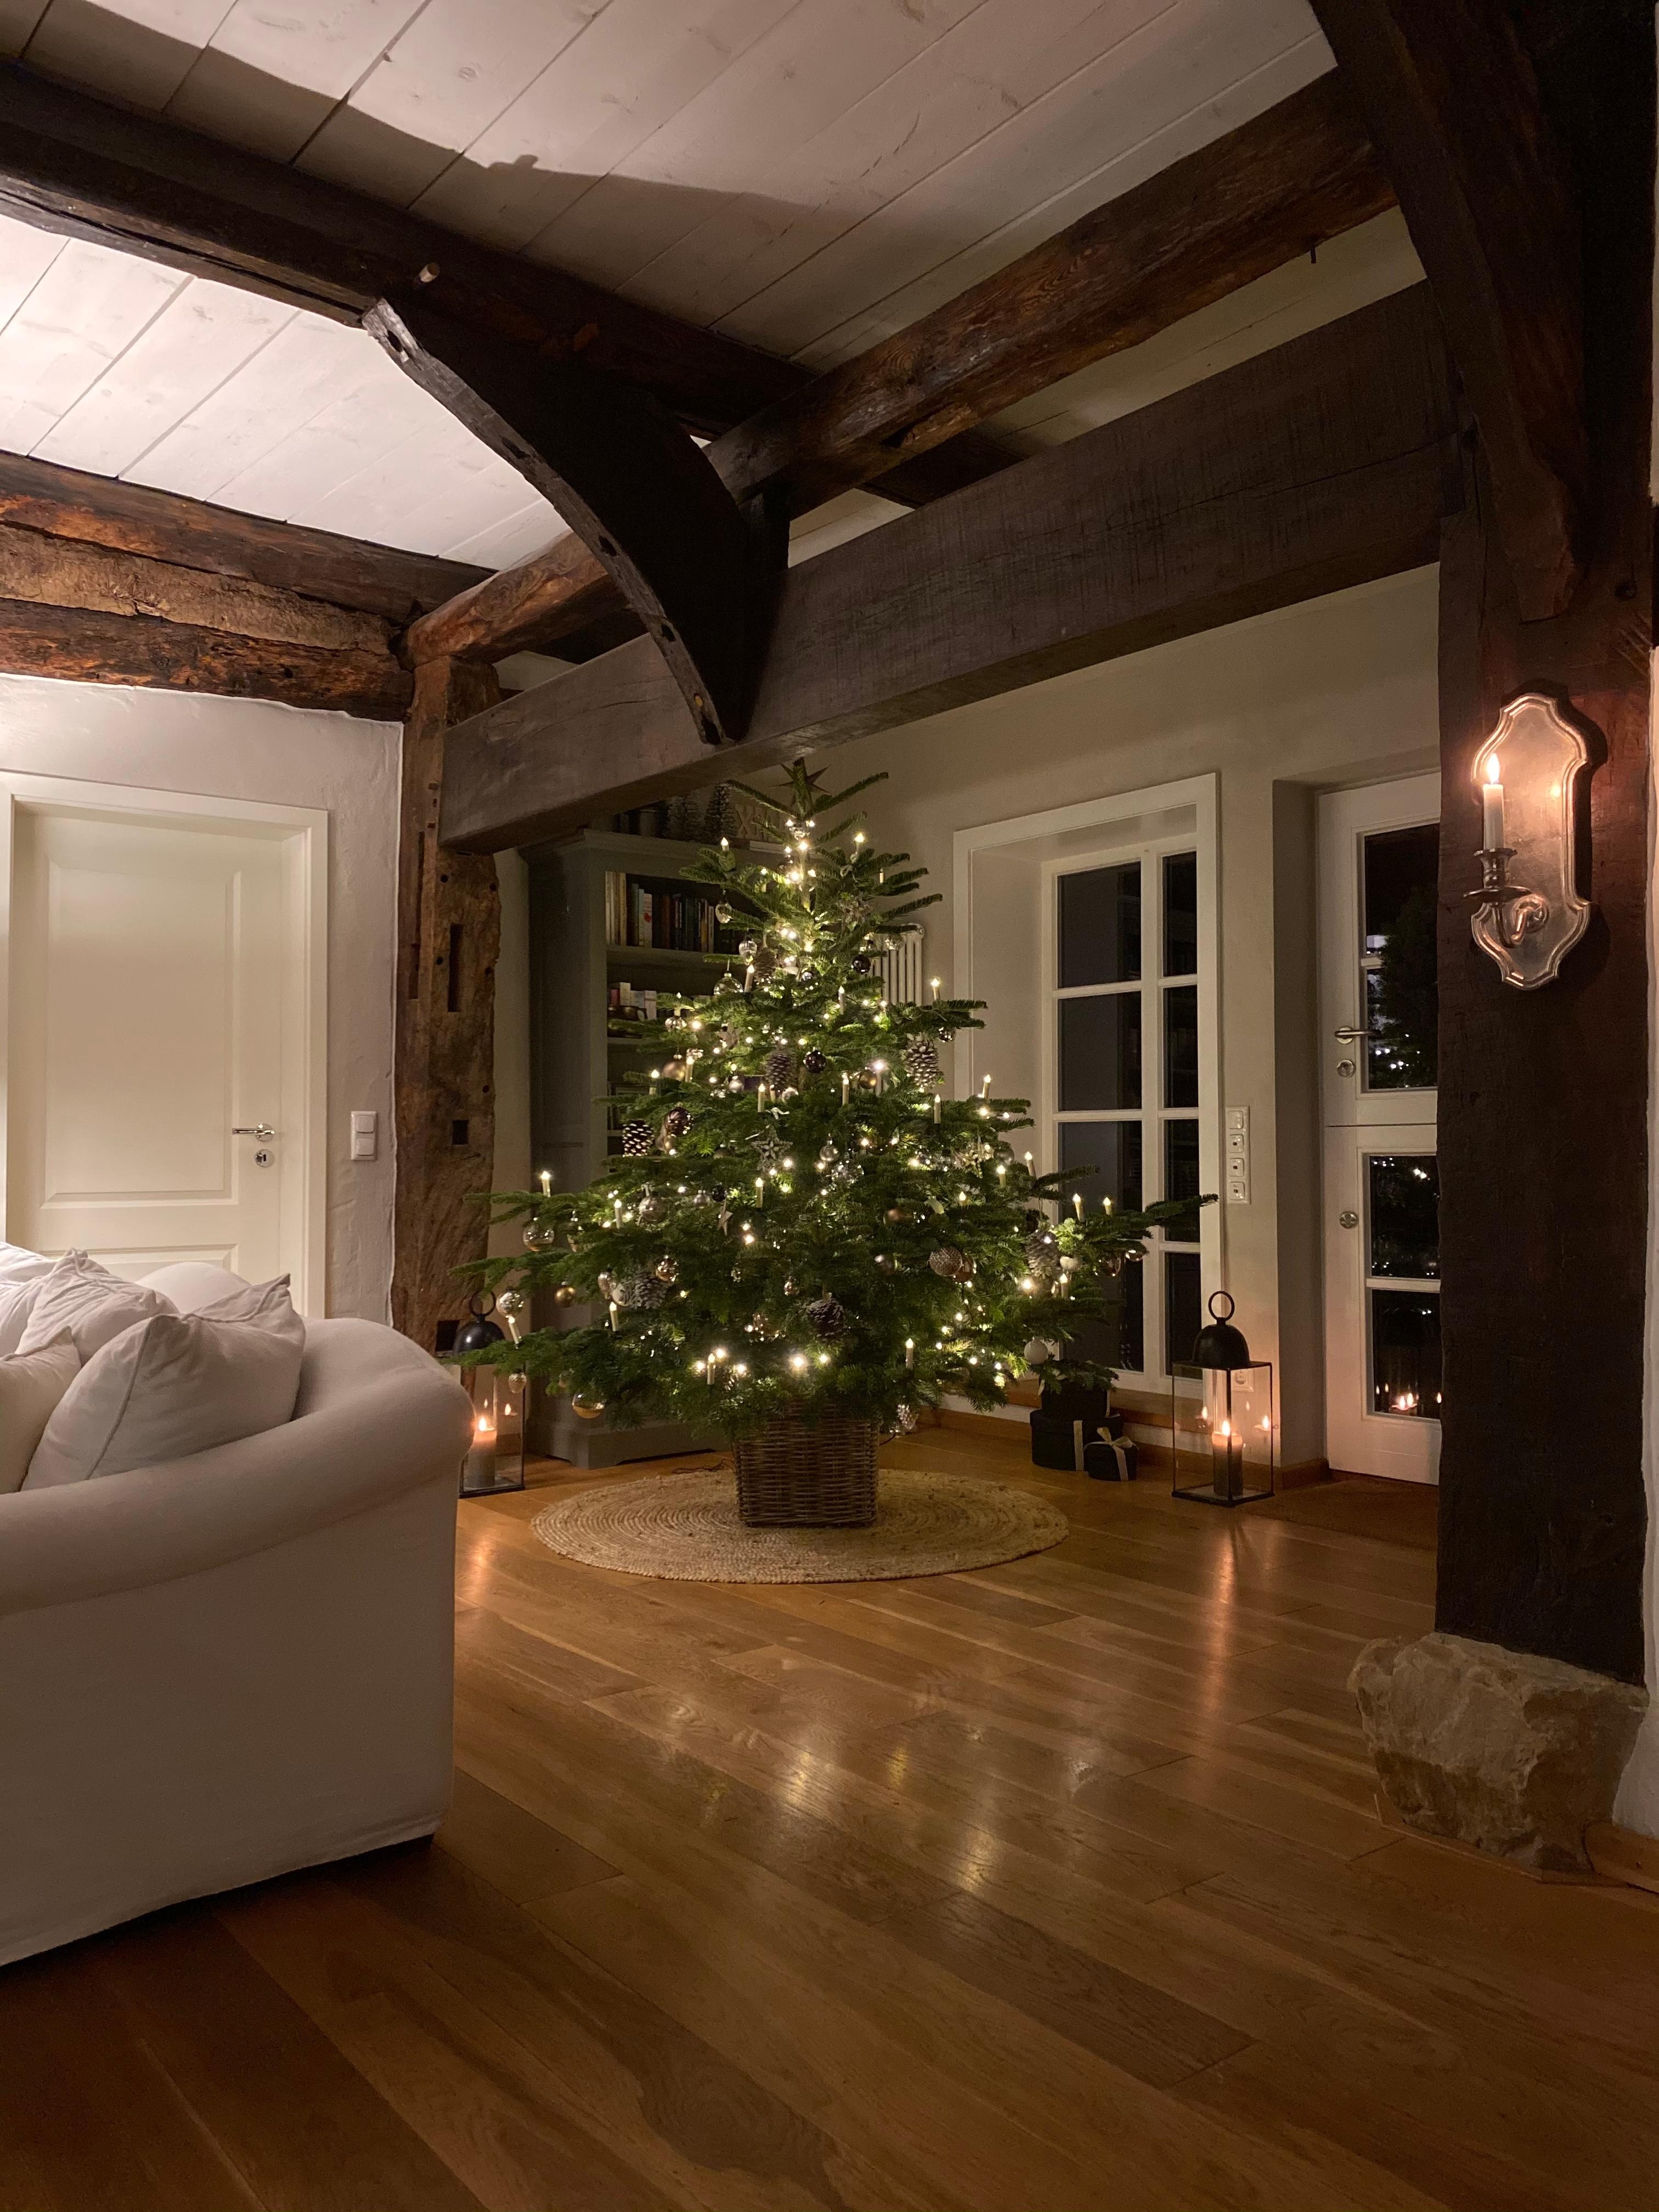 #tannenbaum #fachwerkhaus #weihnachtsbaum #weihnachtsdekoration #christmastree